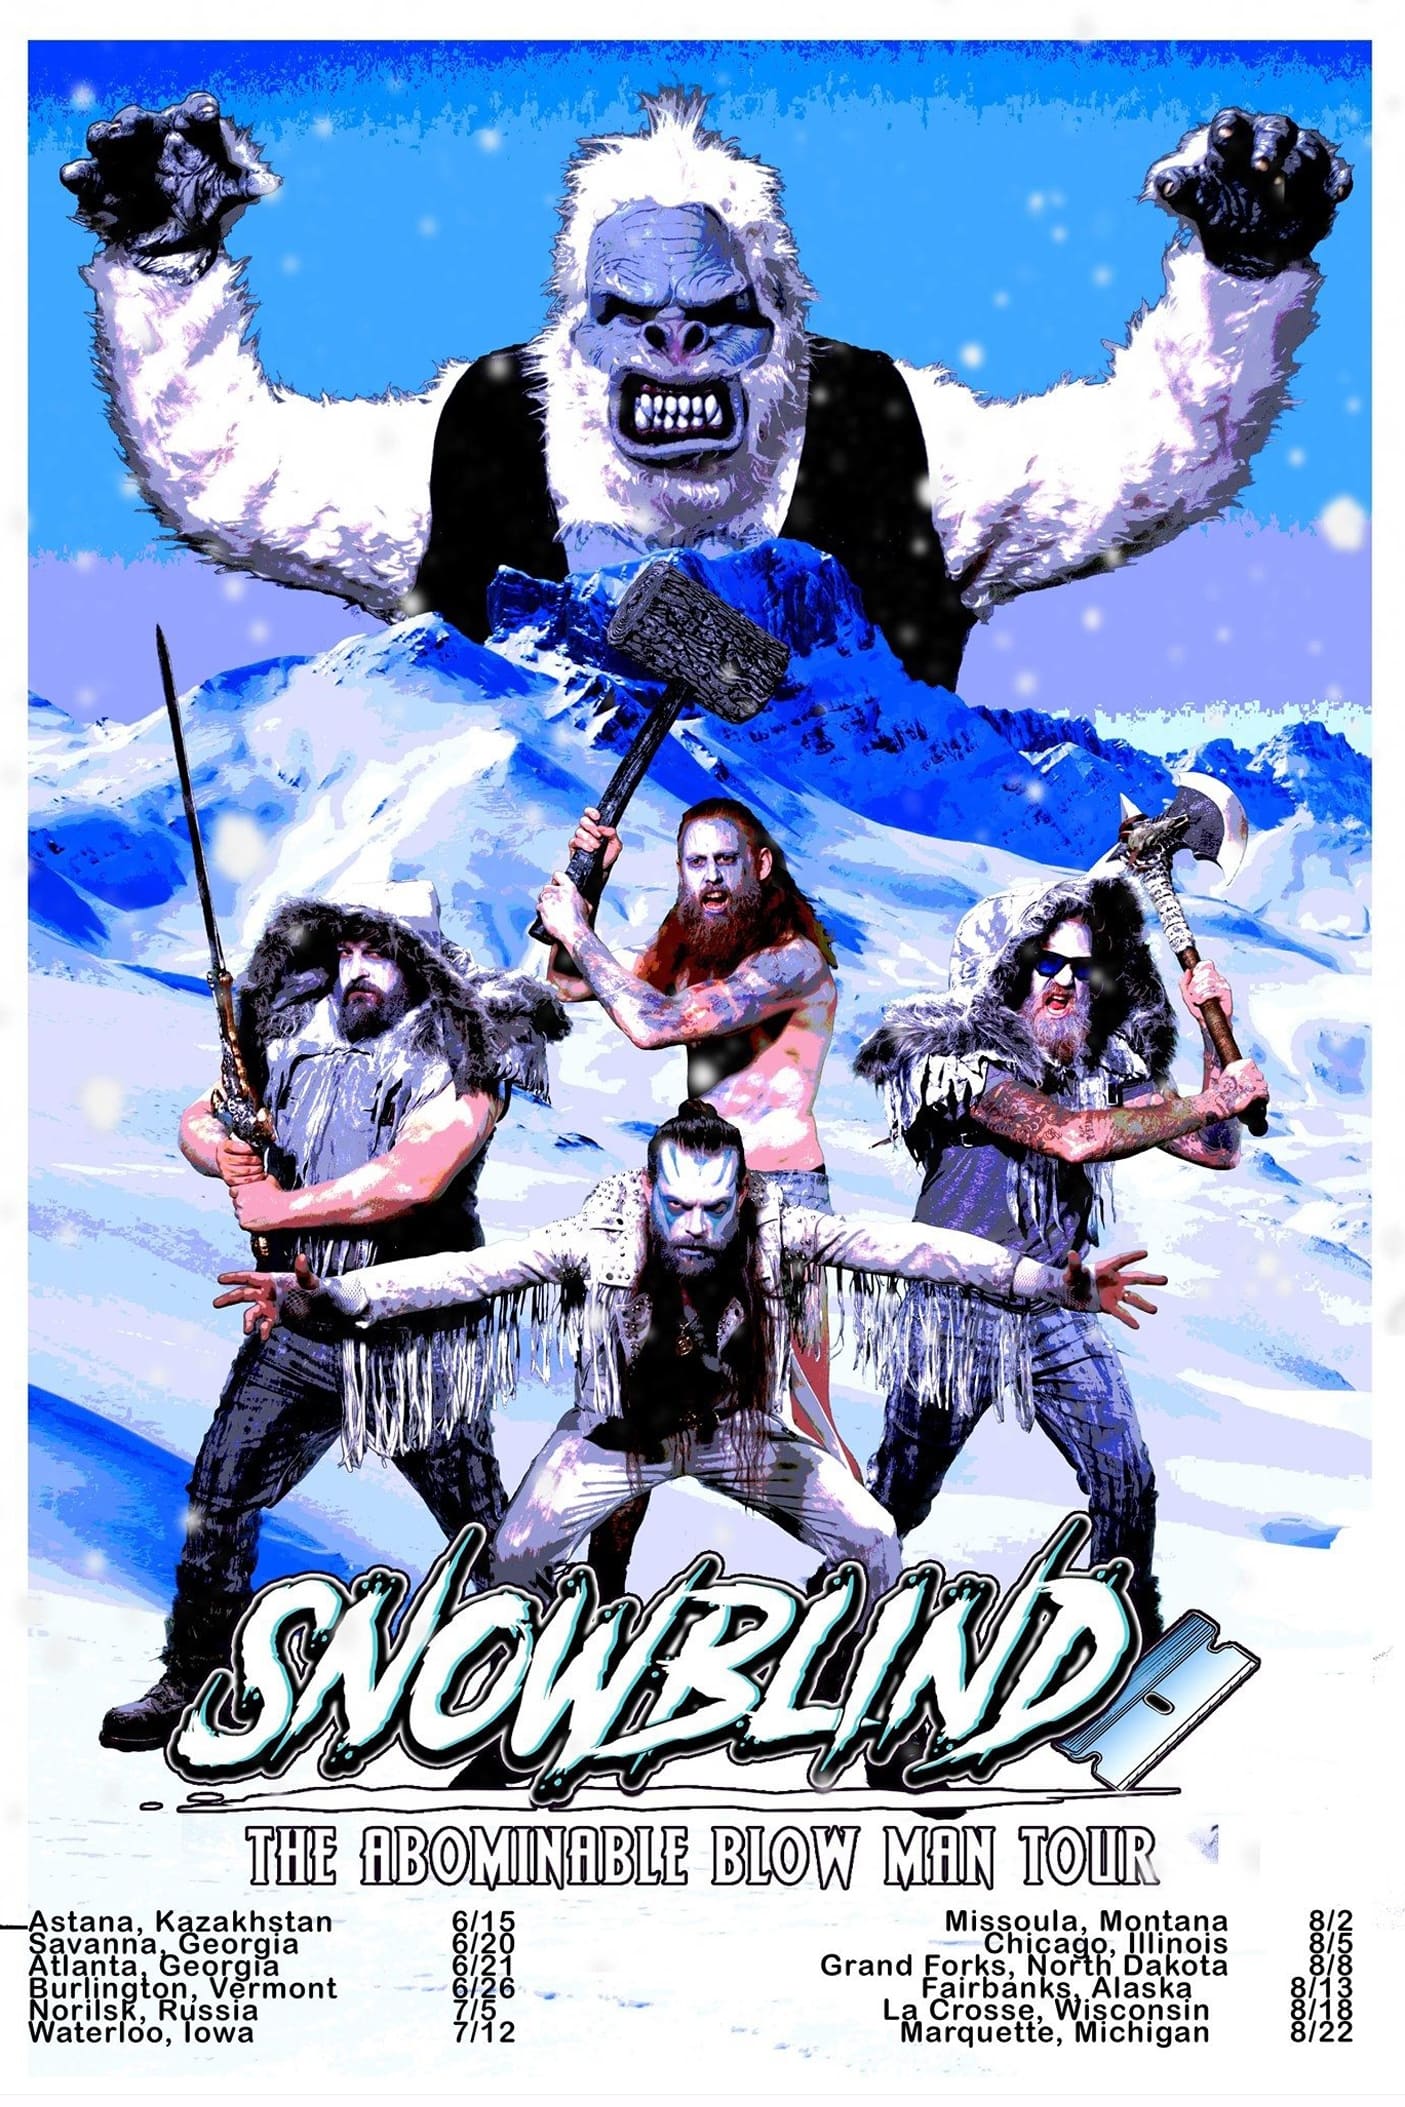 Snowblind